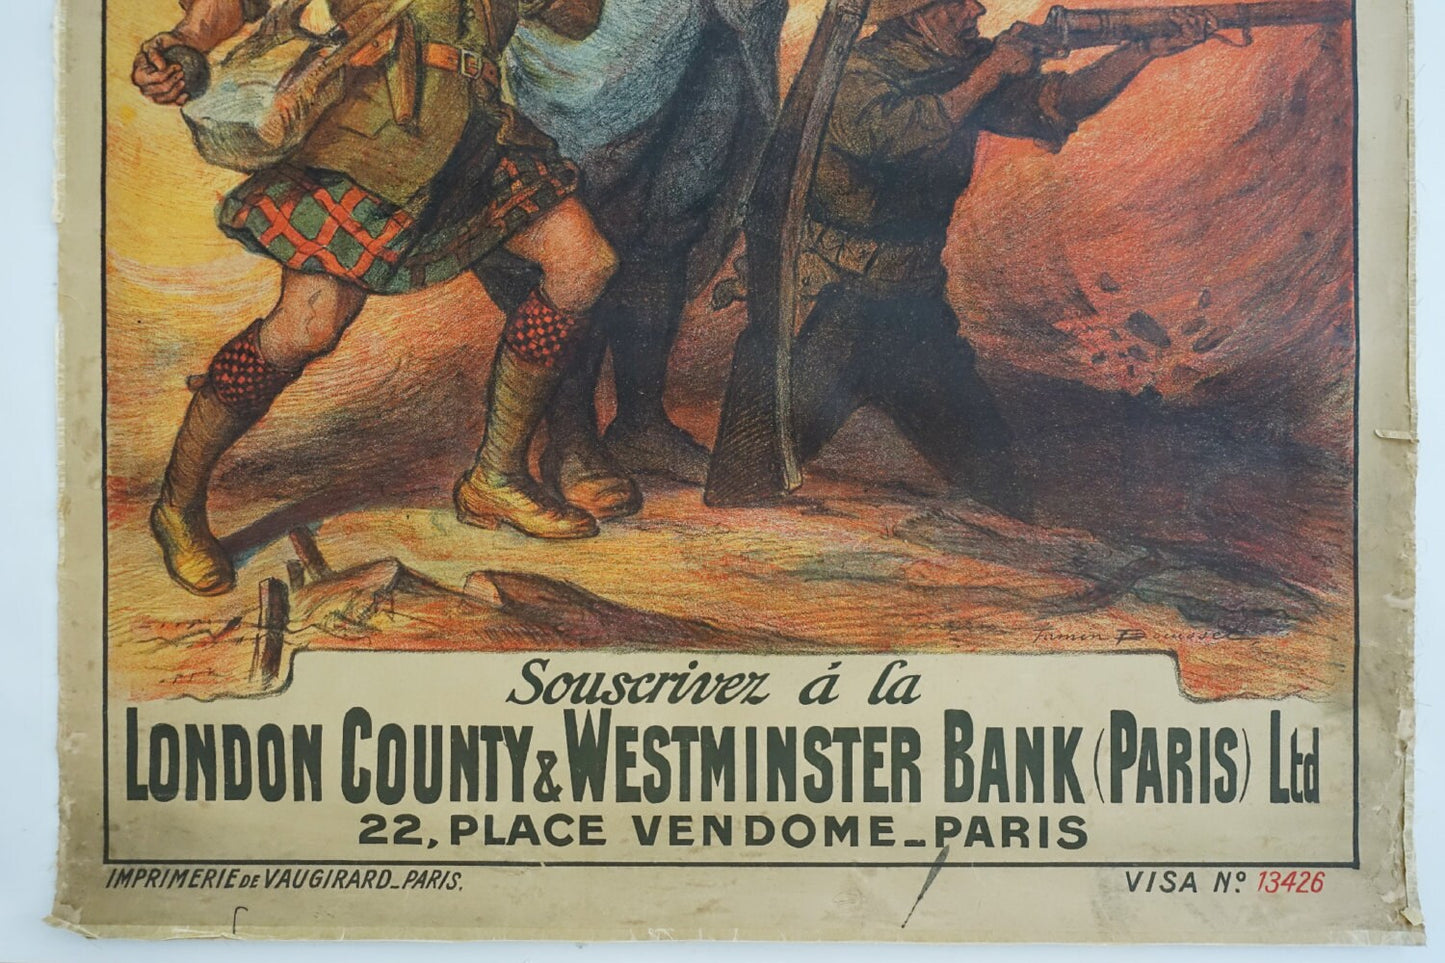 1918 French WWI Propaganda Poster for War Shares "Emprunt de la Libération" - Original Vintage Poster